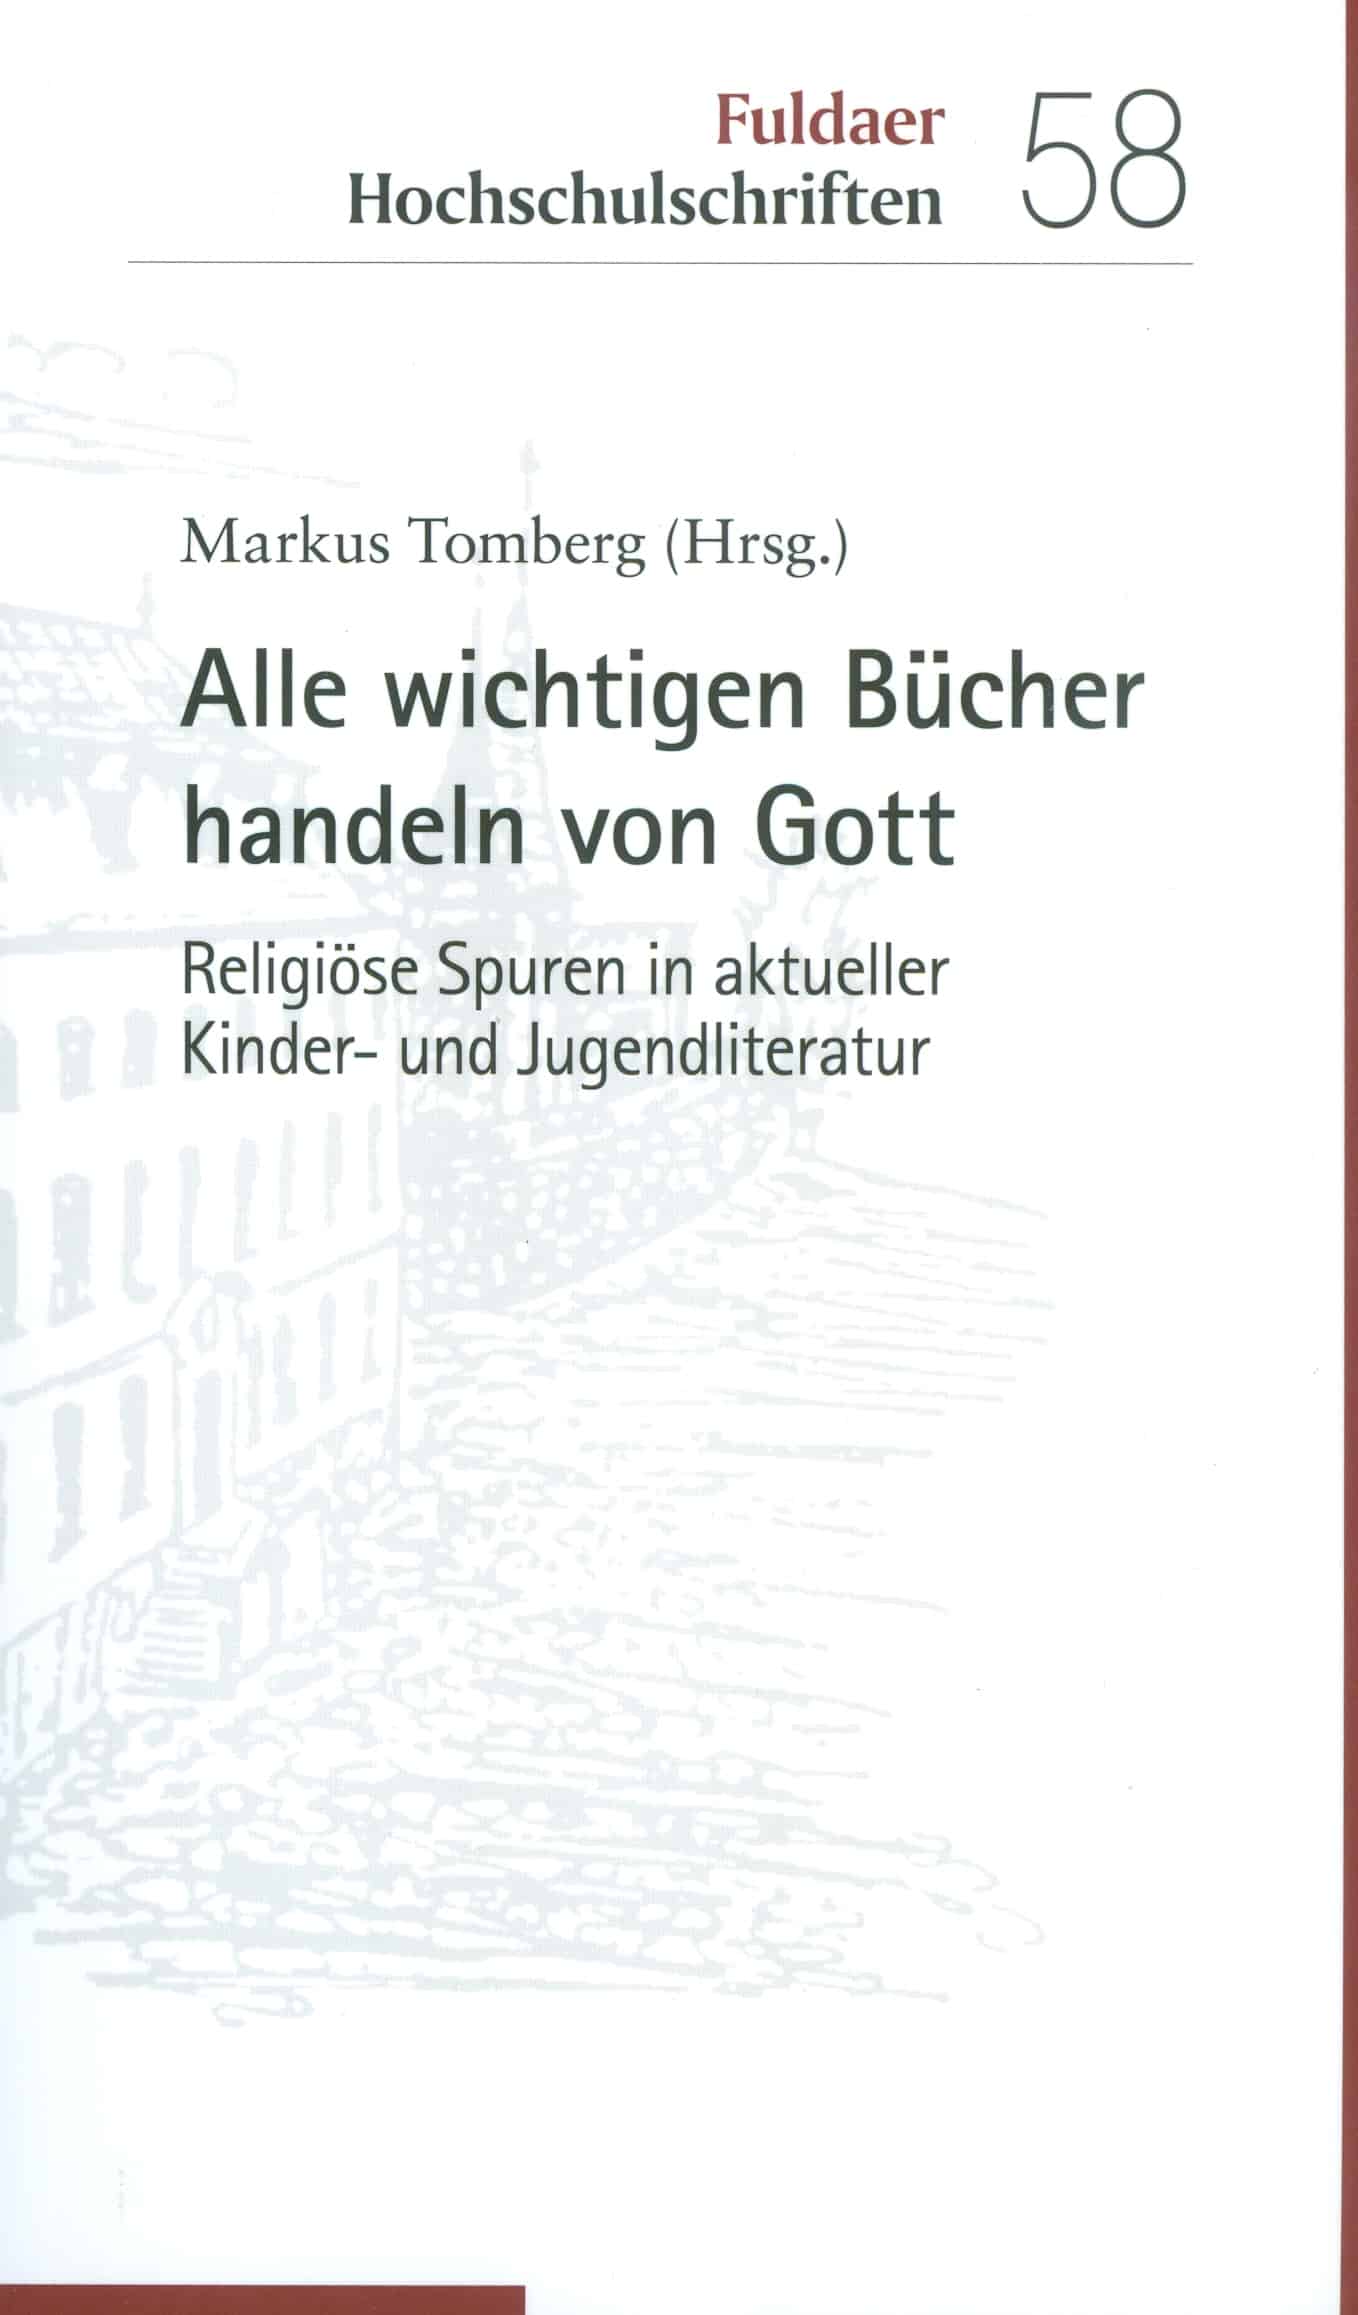 Tomberg, Markus: Alle wichtigen Bücher handeln von Gott. Religiöse Spuren in aktueller Kinder- und Jugendliteratur